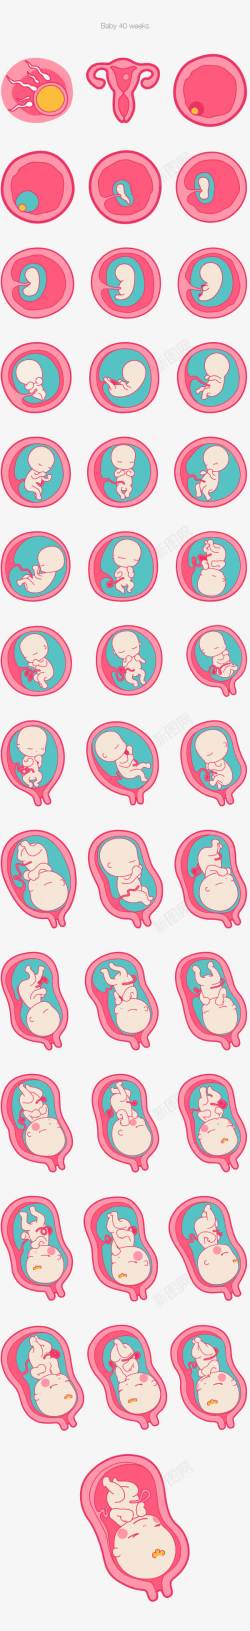 发育胚胎发育高清图片